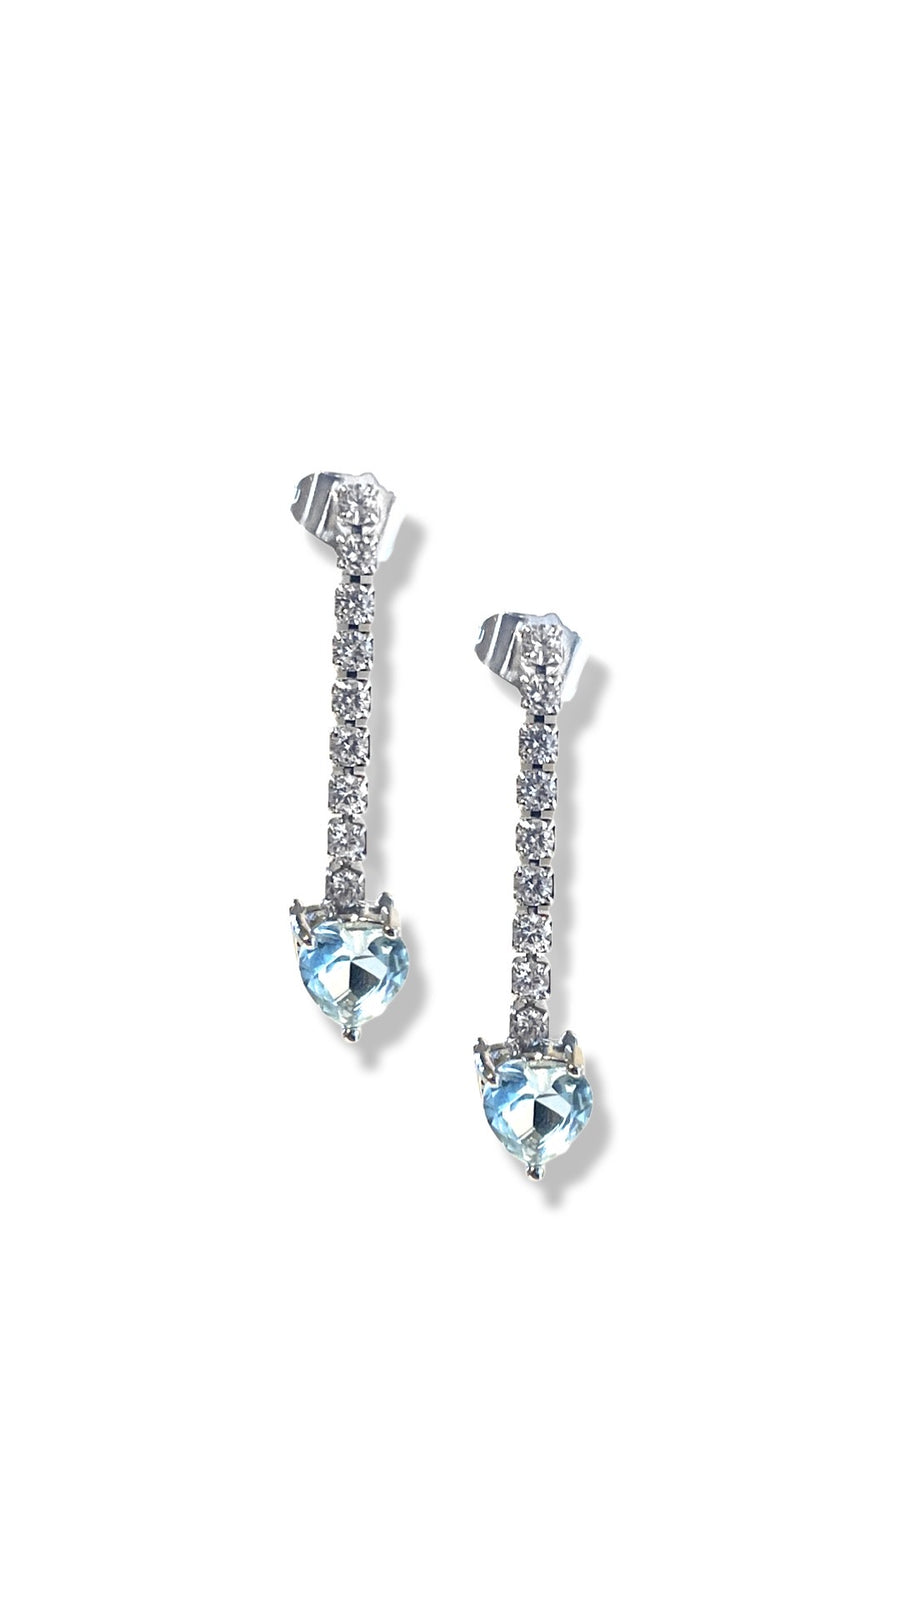 Light blue heart drop earrings